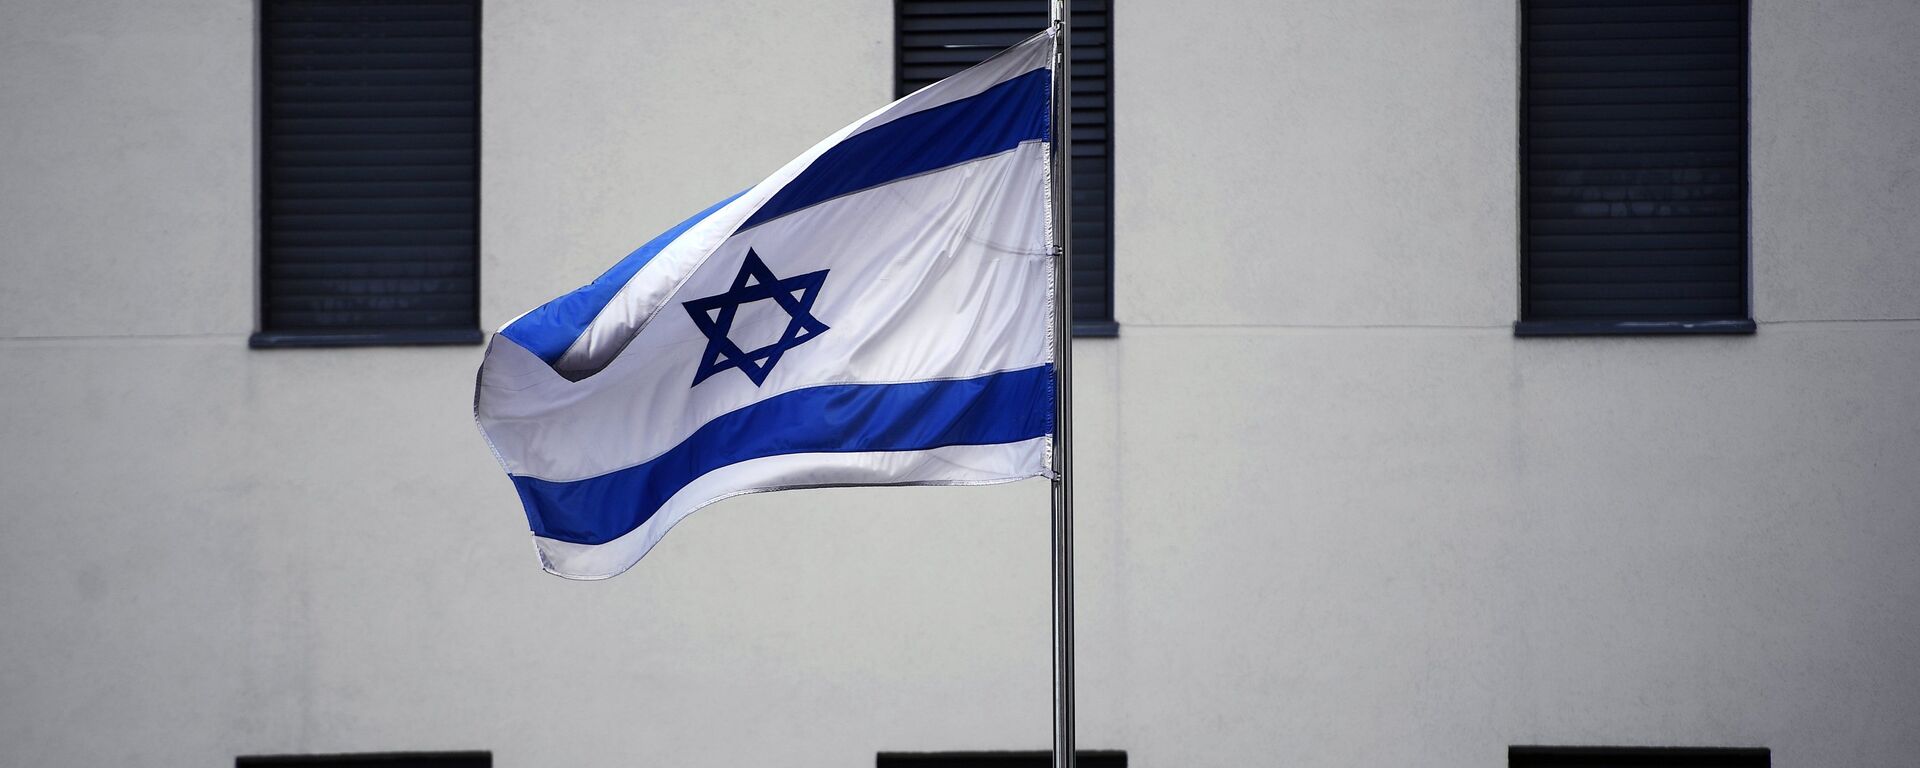 Bandera de Israel en el edificio de la Embajada israelí en Moscú (archivo) - Sputnik Mundo, 1920, 03.07.2020